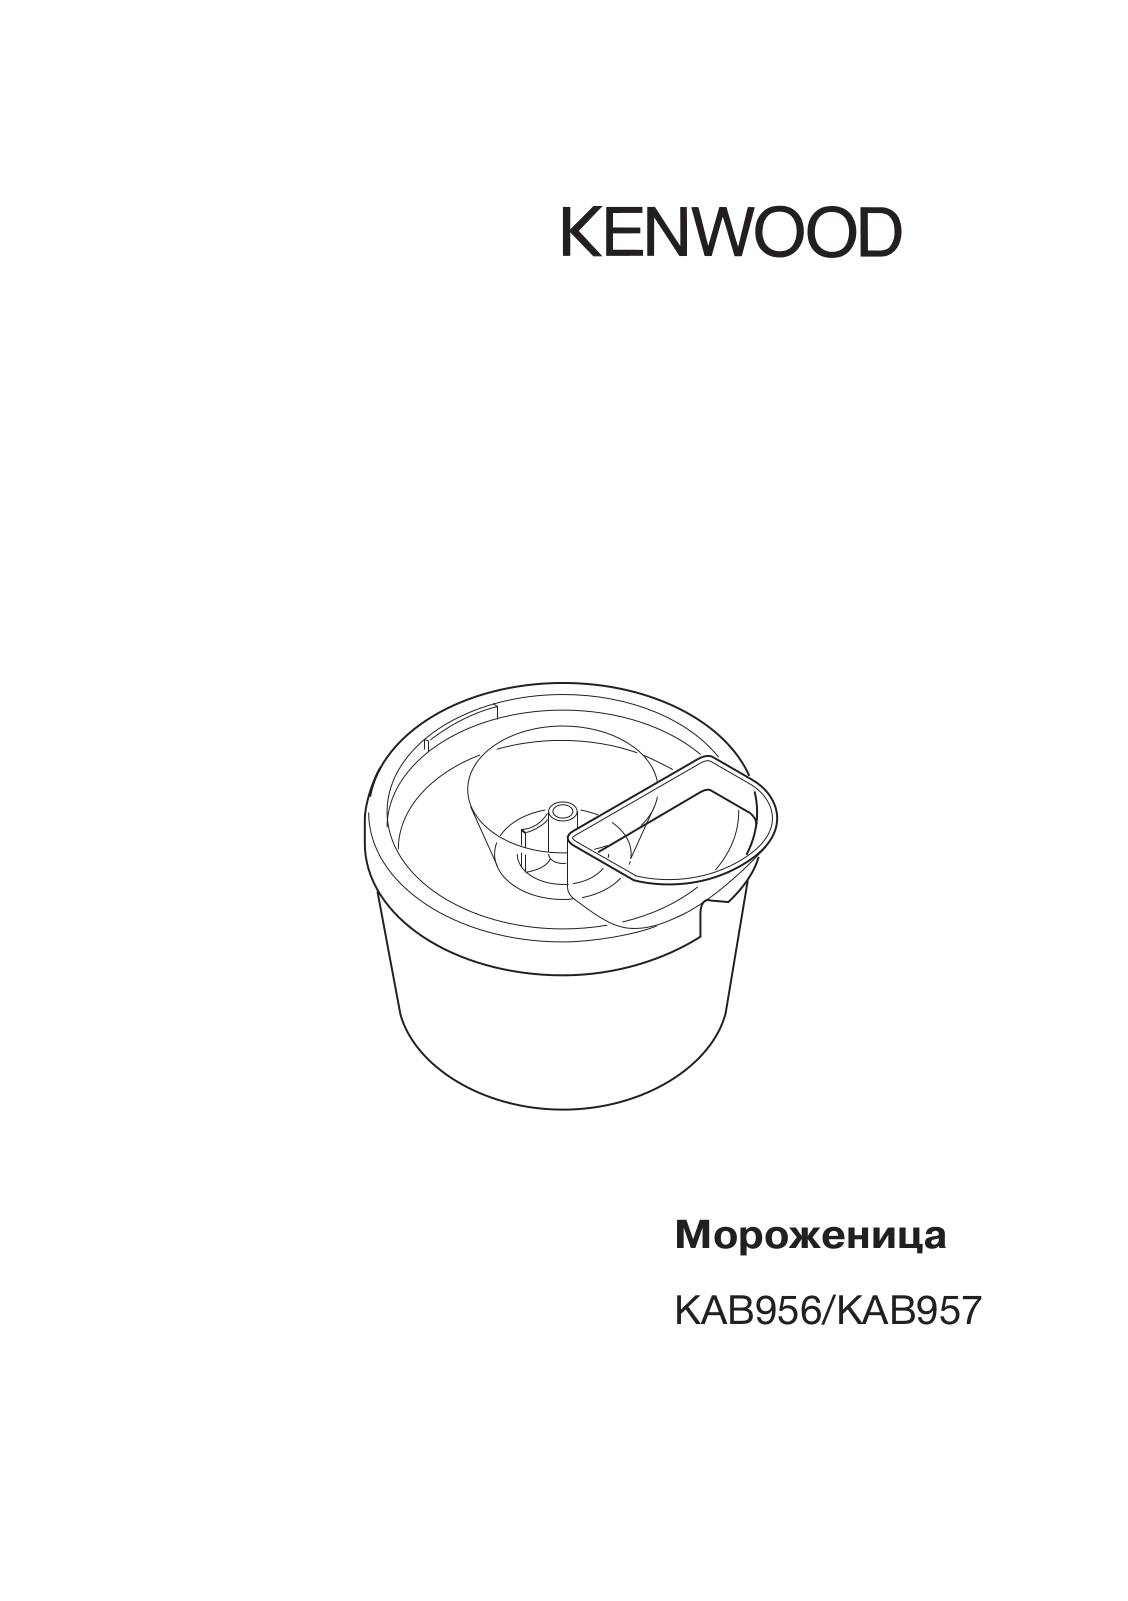 Kenwood KAB956 User Manual